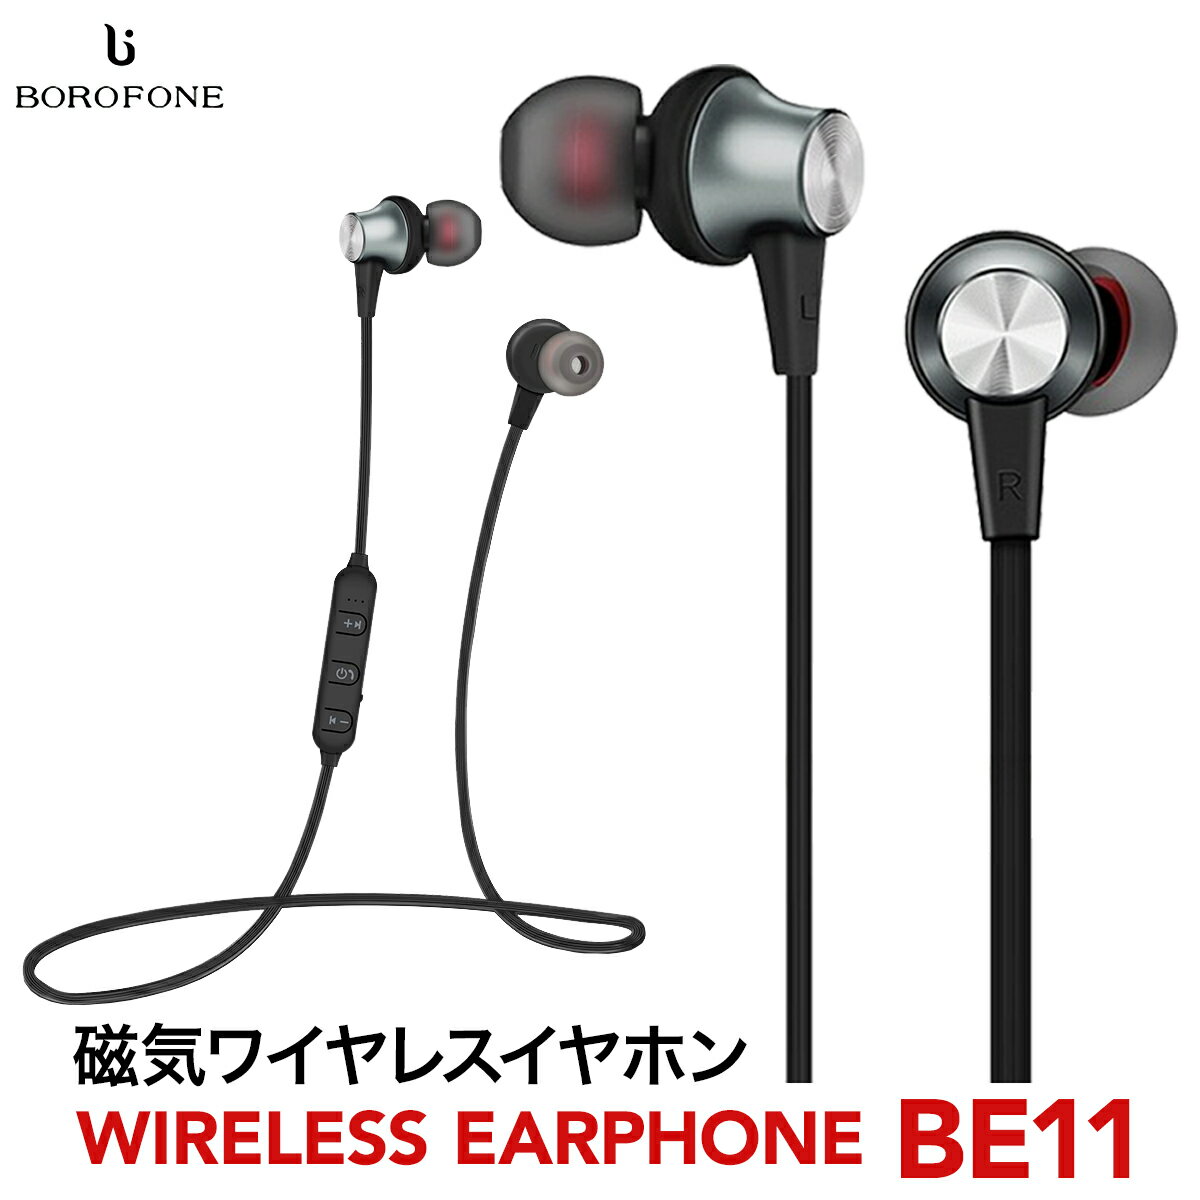 ワイヤレスイヤホン ワイヤレス イヤホン Bluetooth iphone 両耳 スポーツイヤホン ハンズフリー ワイヤレス イヤホン ランニング ボロフォン BOROFONE borofone-be11-cp